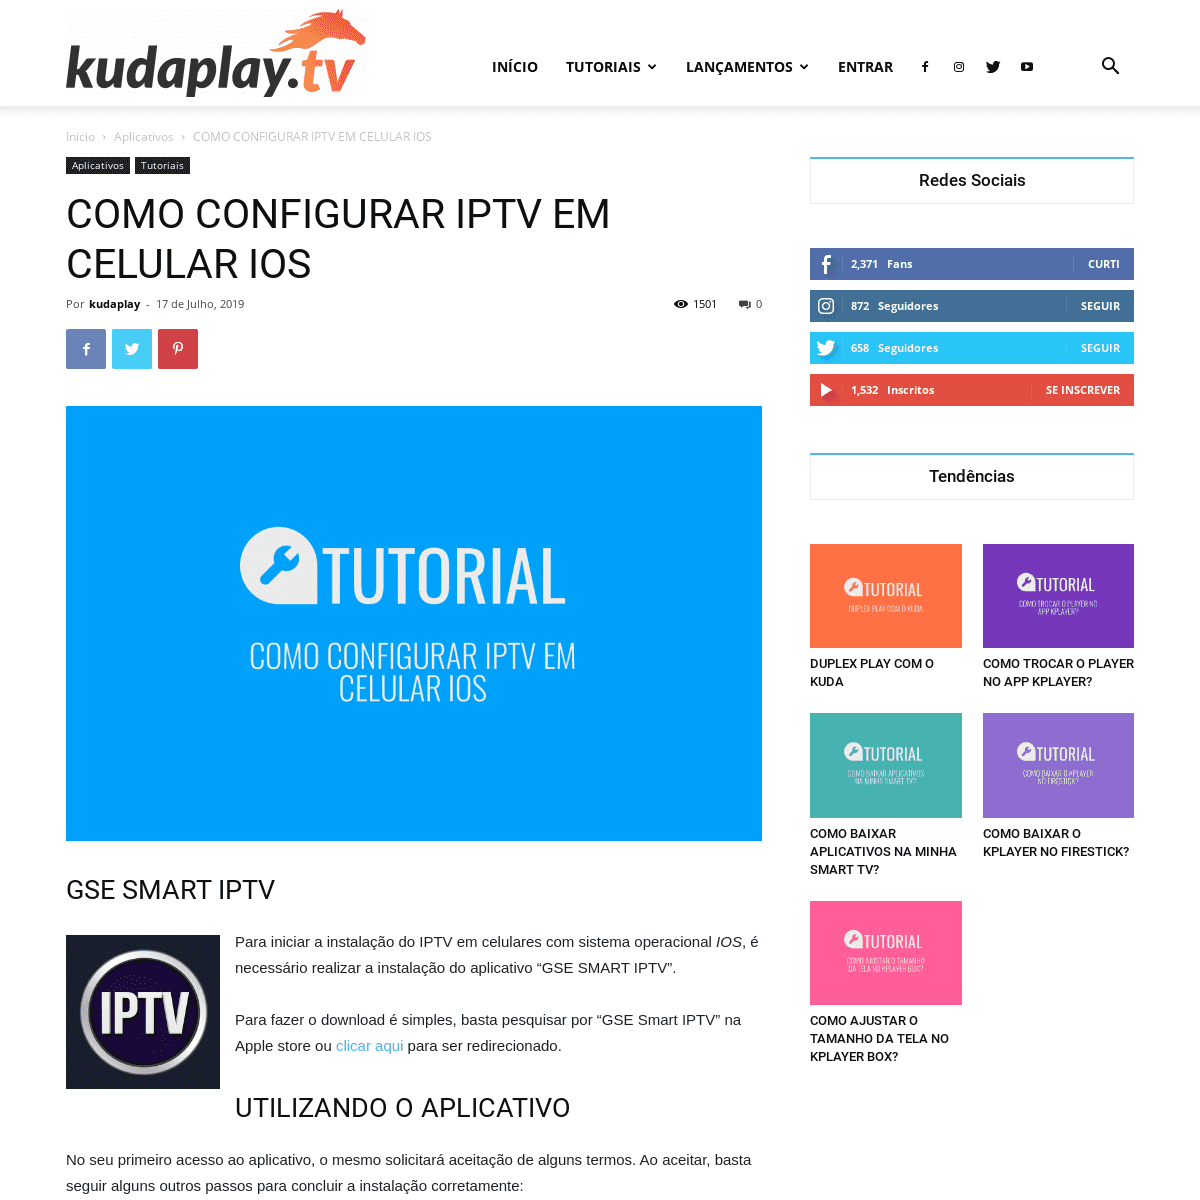 A complete backup of http://kudaplay.tv/blog/como-configurar-iptv-em-celular-ios/